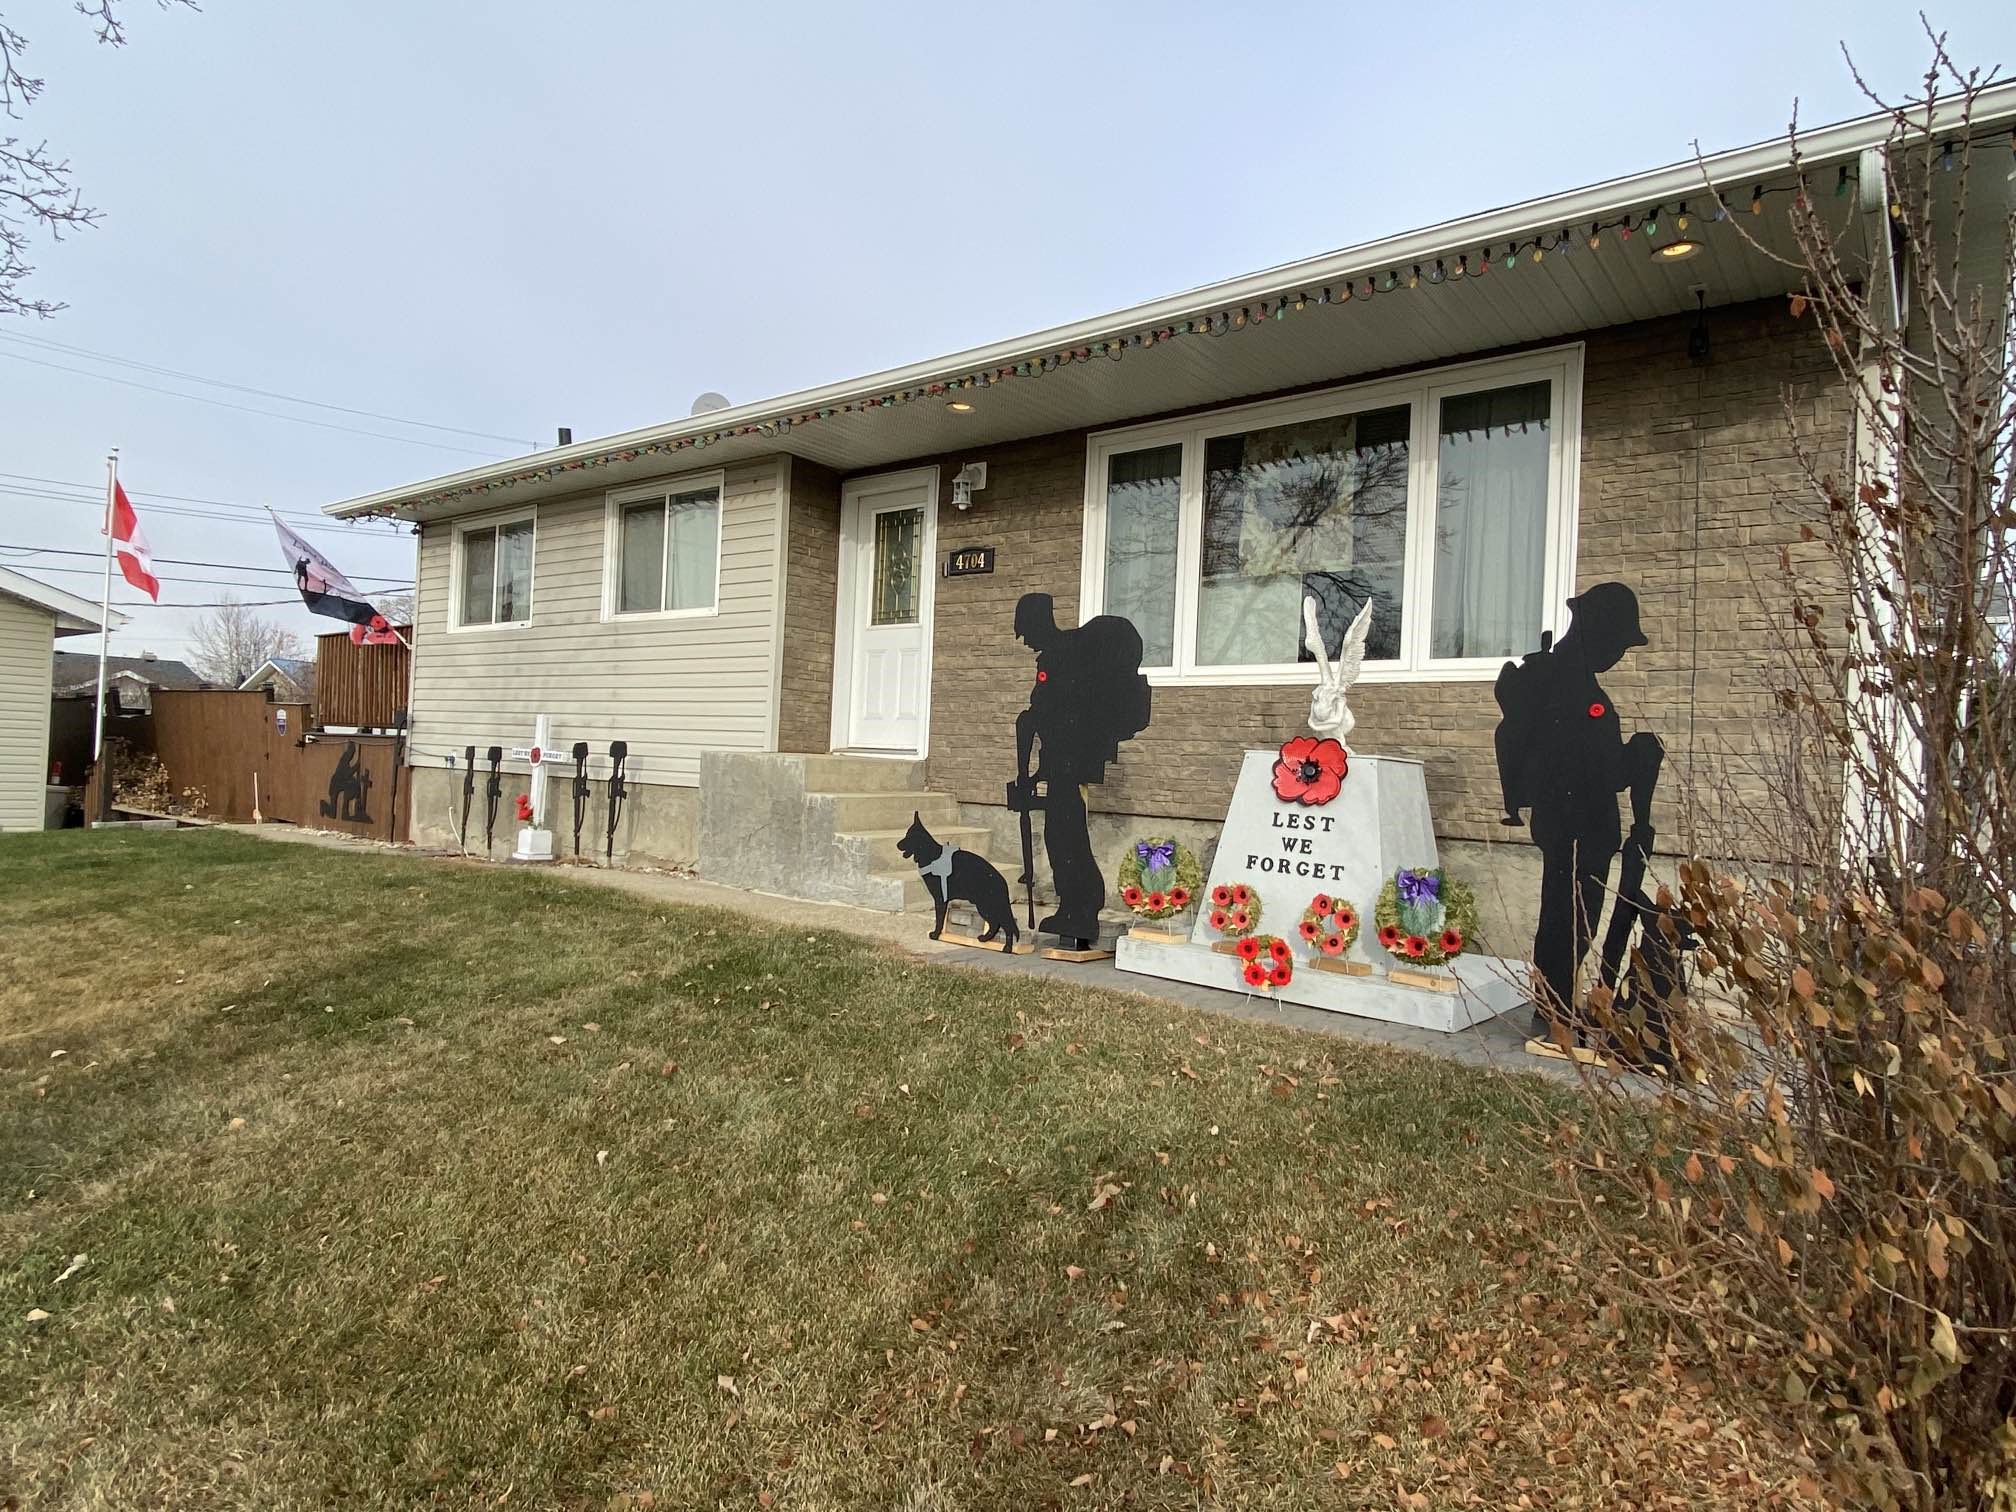 Alberta veteran honours fellow service members with front-yard memorial